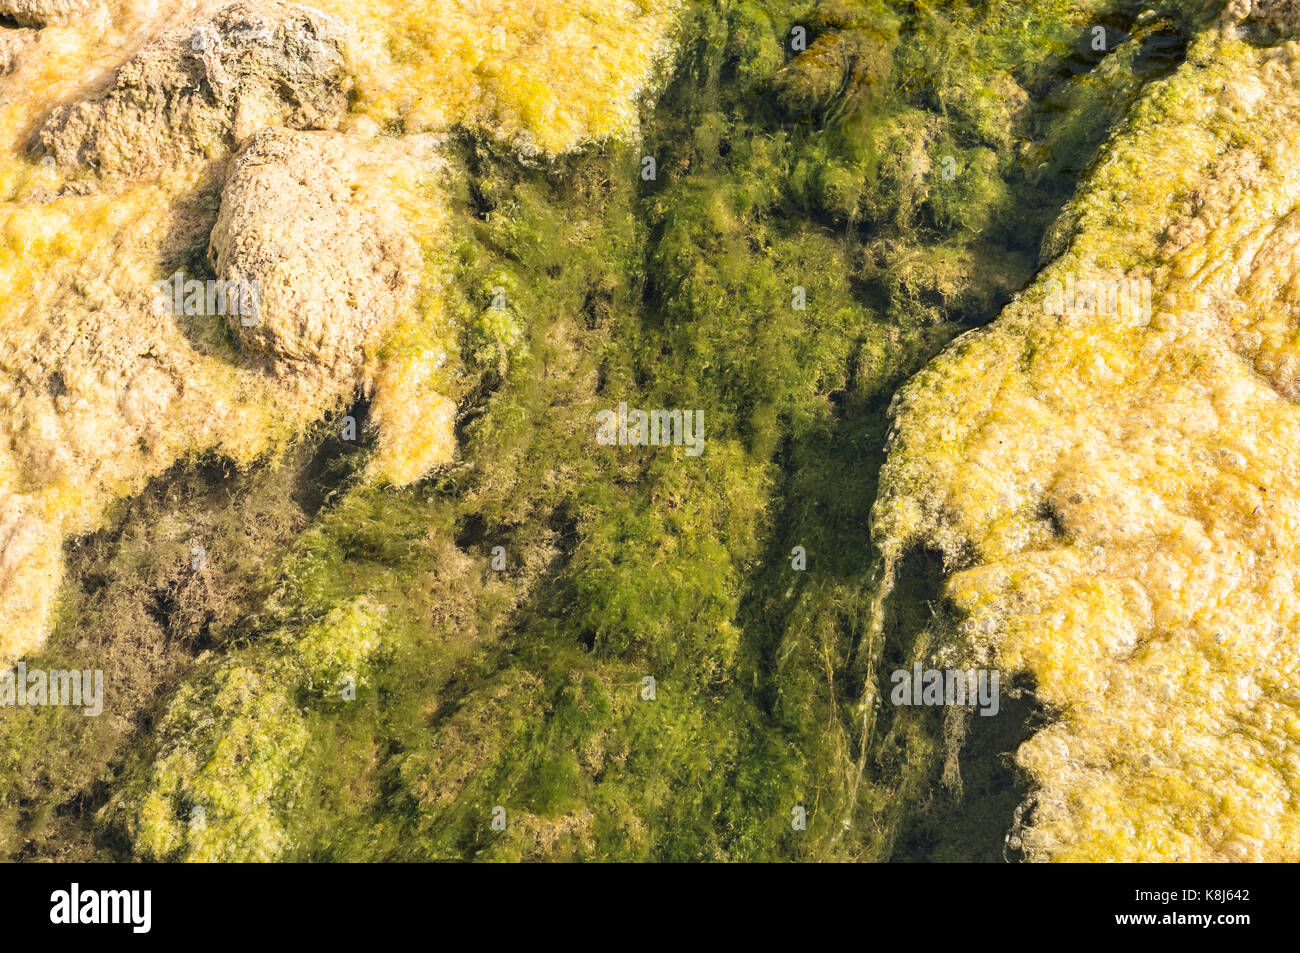 Lit du cours d'une petite rivière polluée undegoing l'eutrophisation, couverts par une croissance excessive des algues Banque D'Images